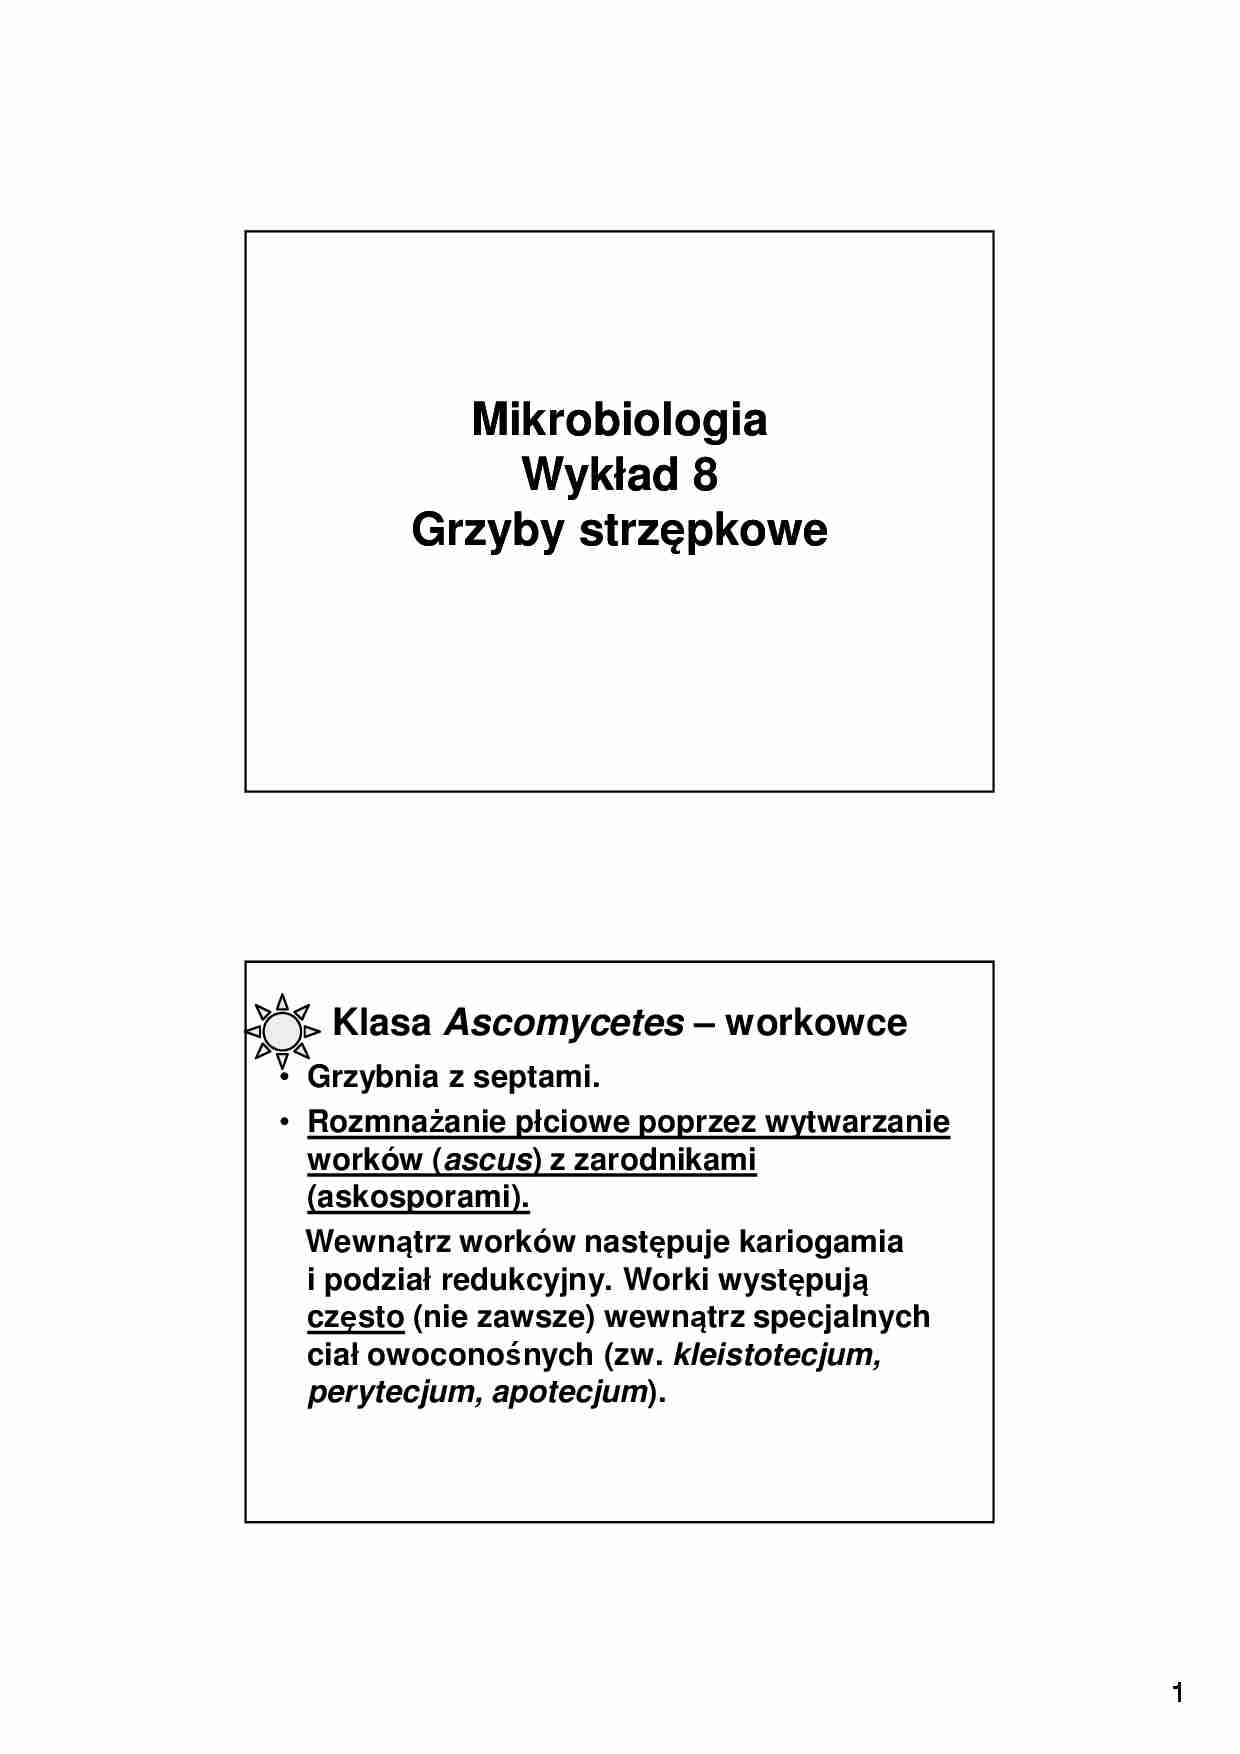 Mikrobiologia, grzyby strzępkowe- wykład 8 - strona 1